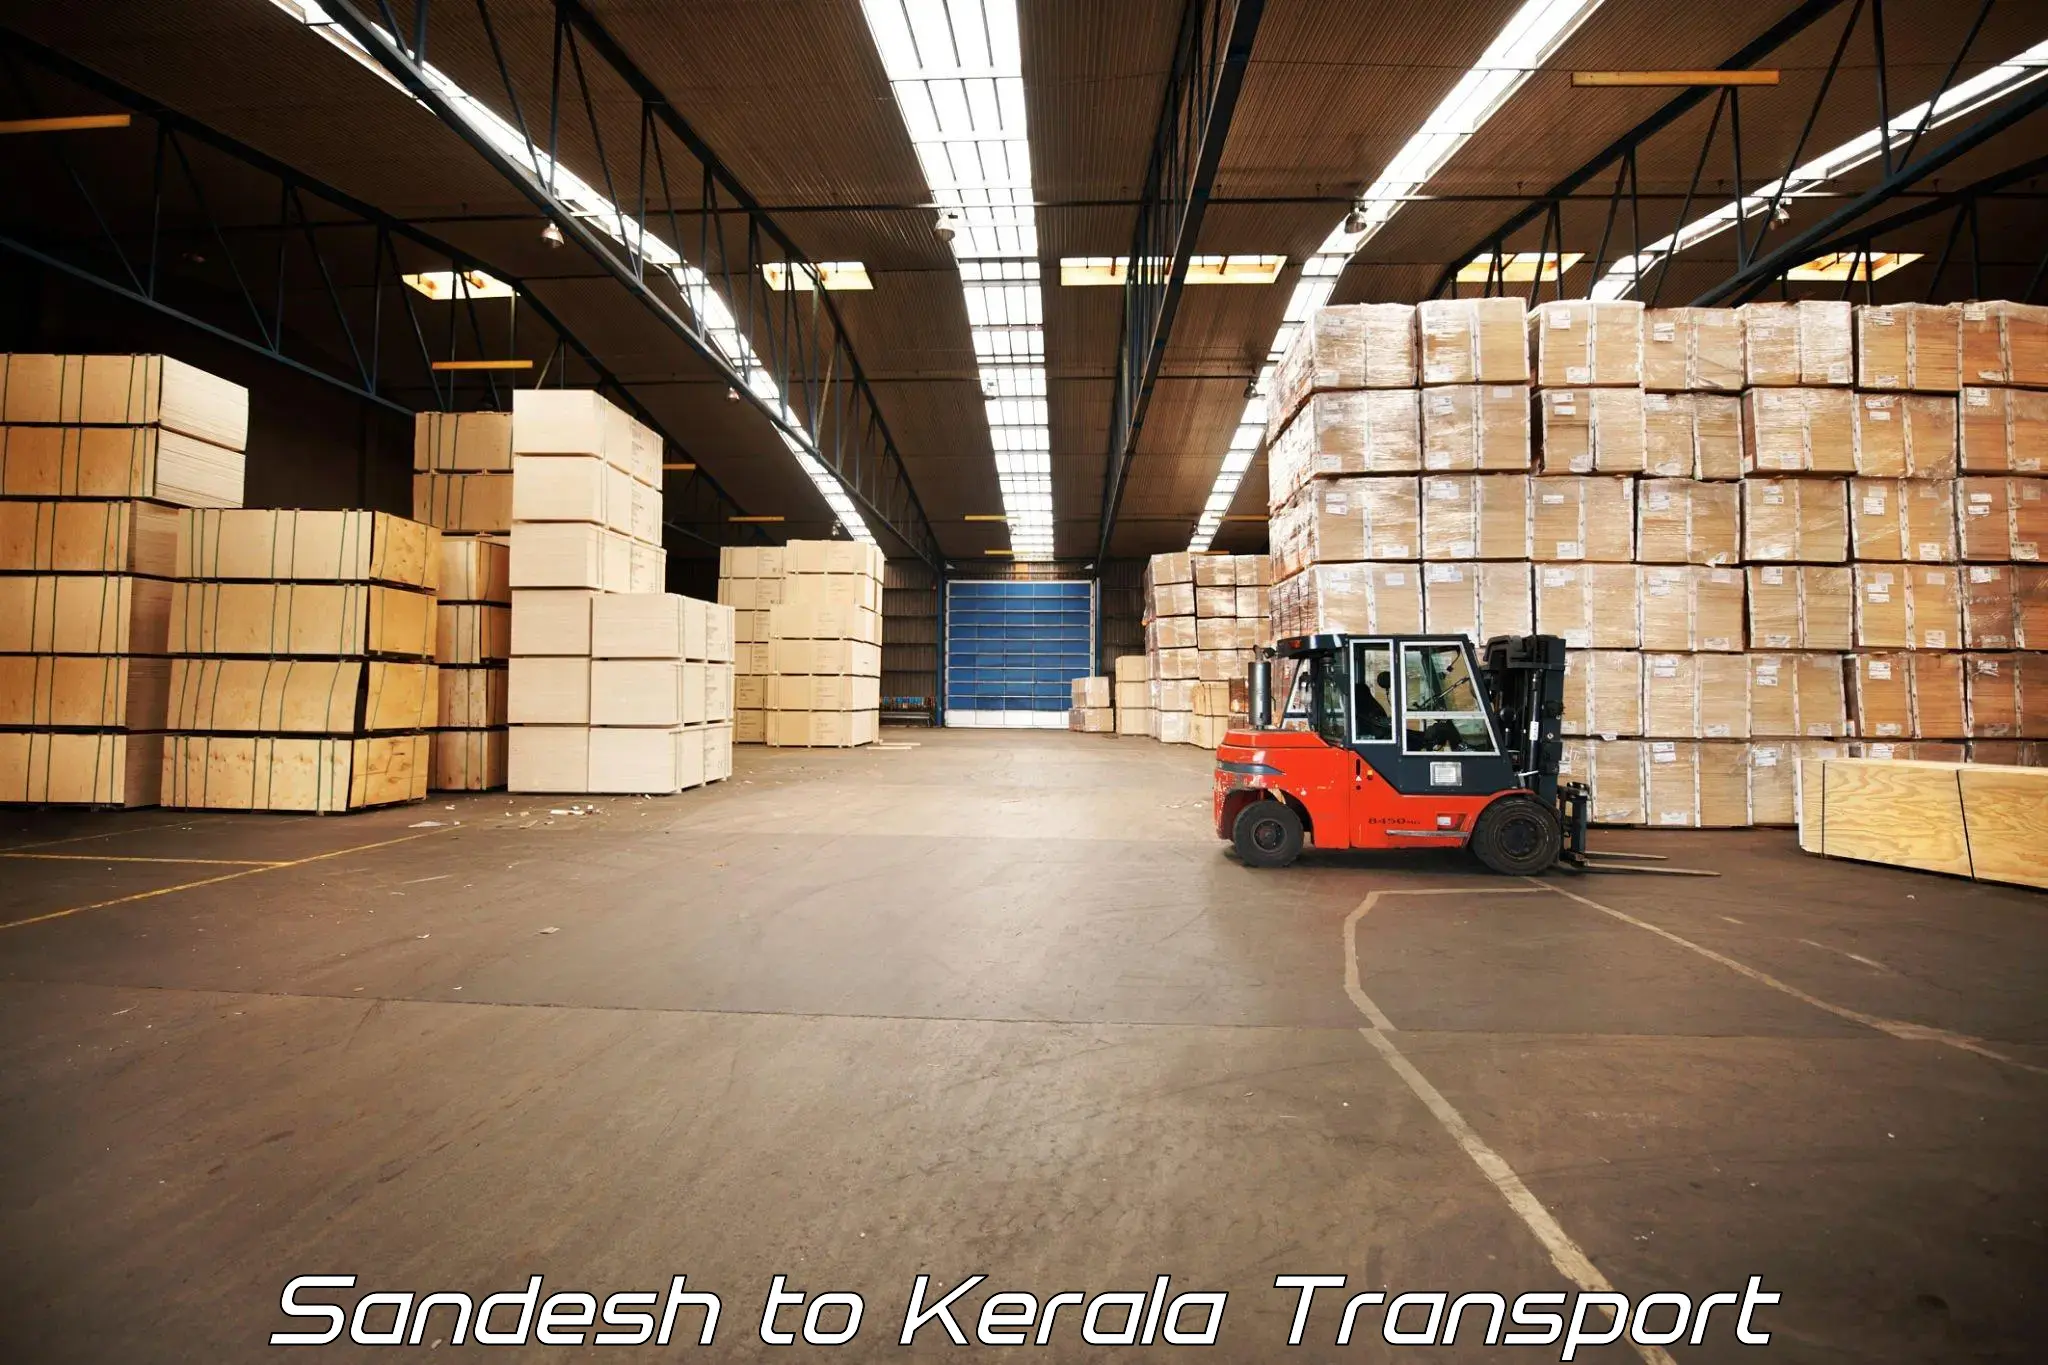 Shipping partner in Sandesh to Kozhikode